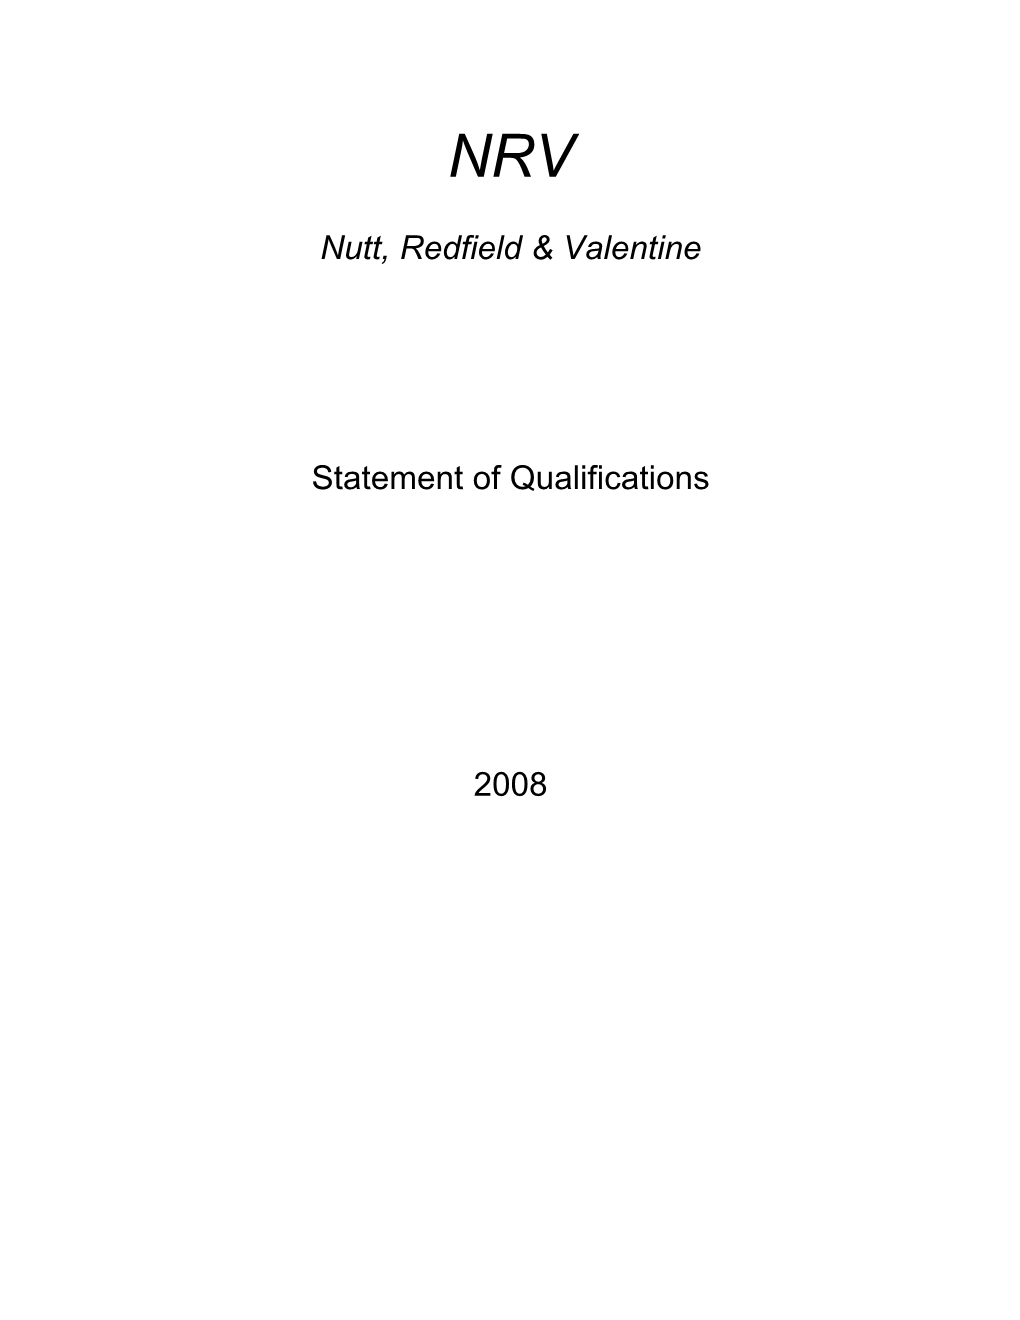 Nutt, Redfield & Valentine Statement of Qualifications 2008